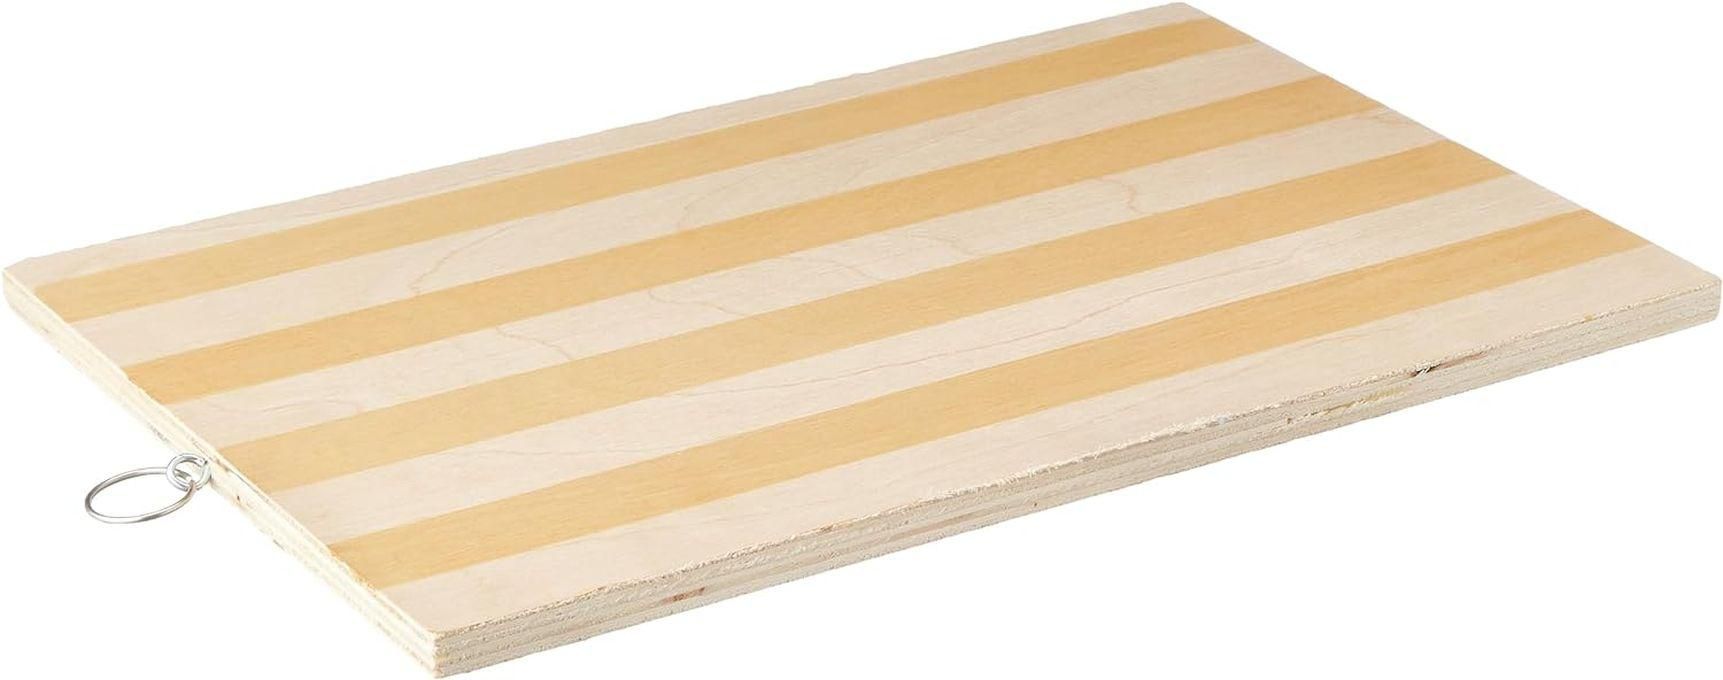 Wooden Cutting Board, Big - Beige